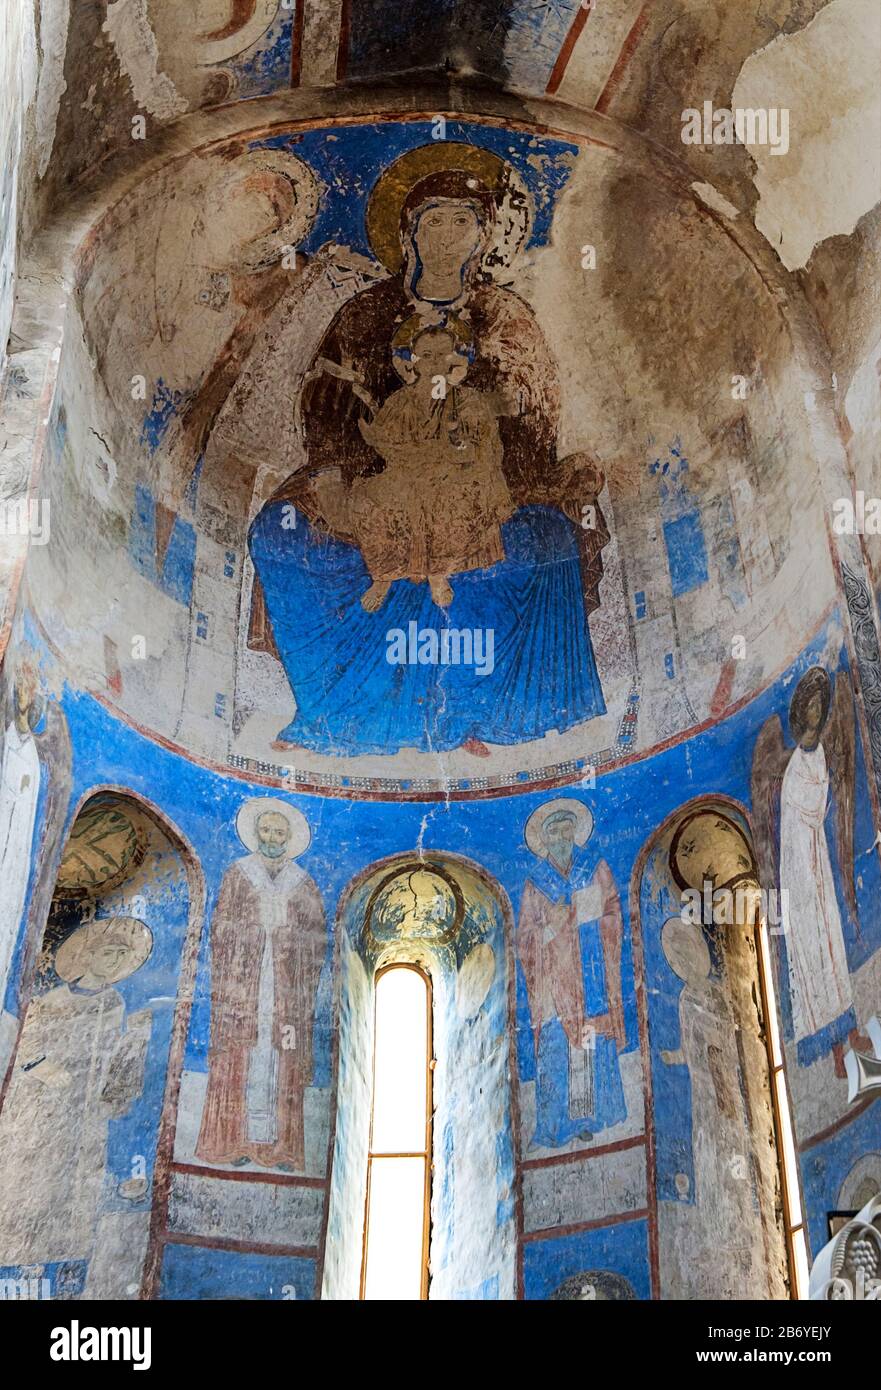 All'interno della chiesa di San Nicola nel monastero ortodosso georgiano Kintsvisi, nella regione di Shida Kartli, Georgia Foto Stock